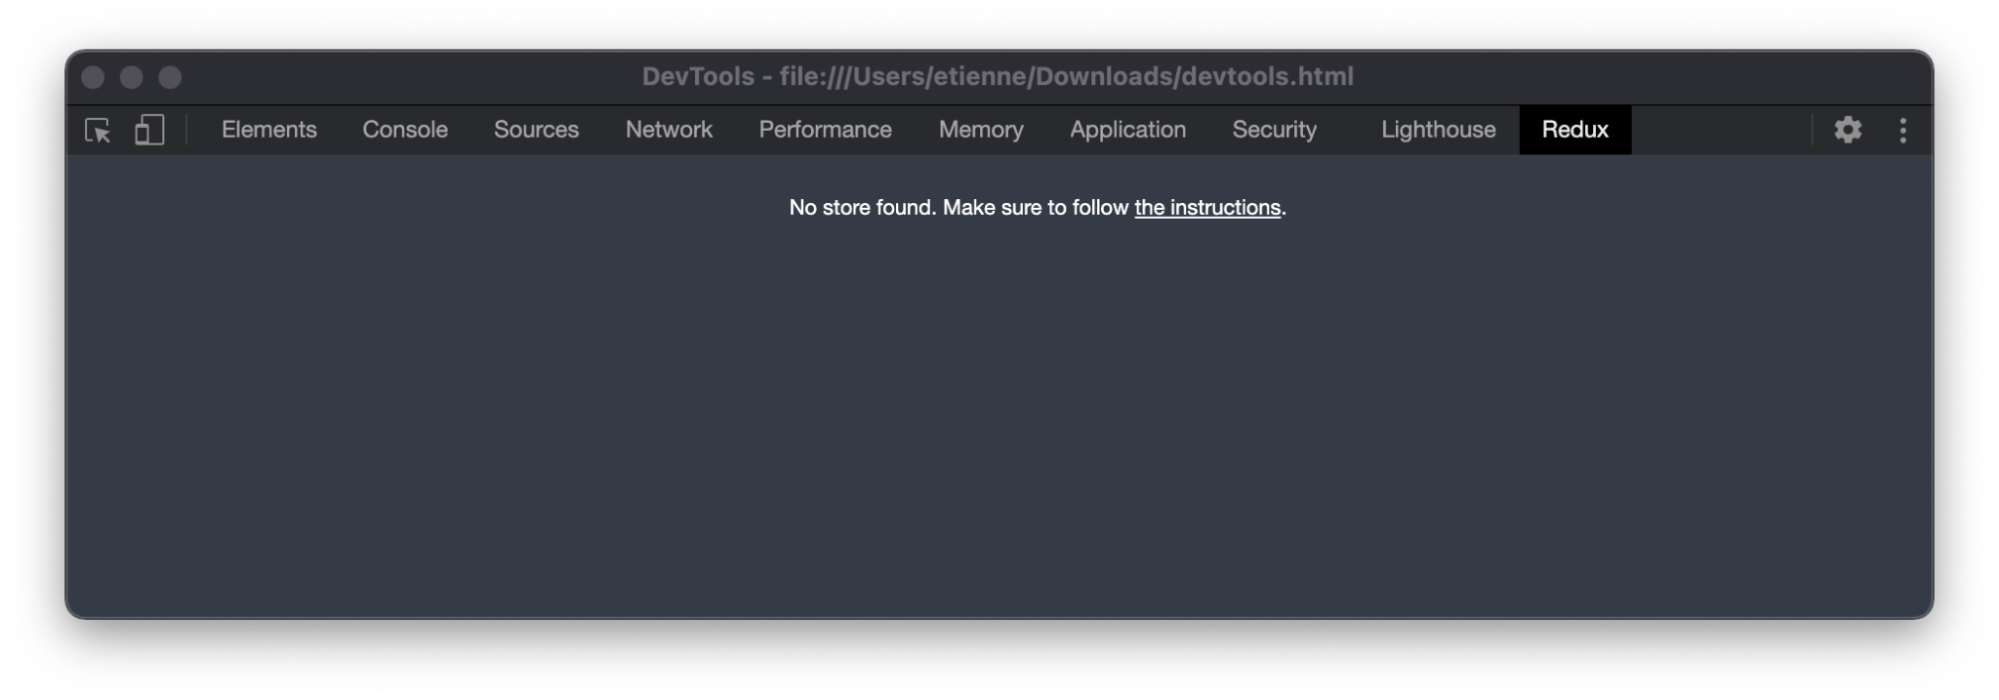 Extension Redux DevTools pour Chrome qui affiche un message pour indiquer qu’aucun store n’a été trouvé.